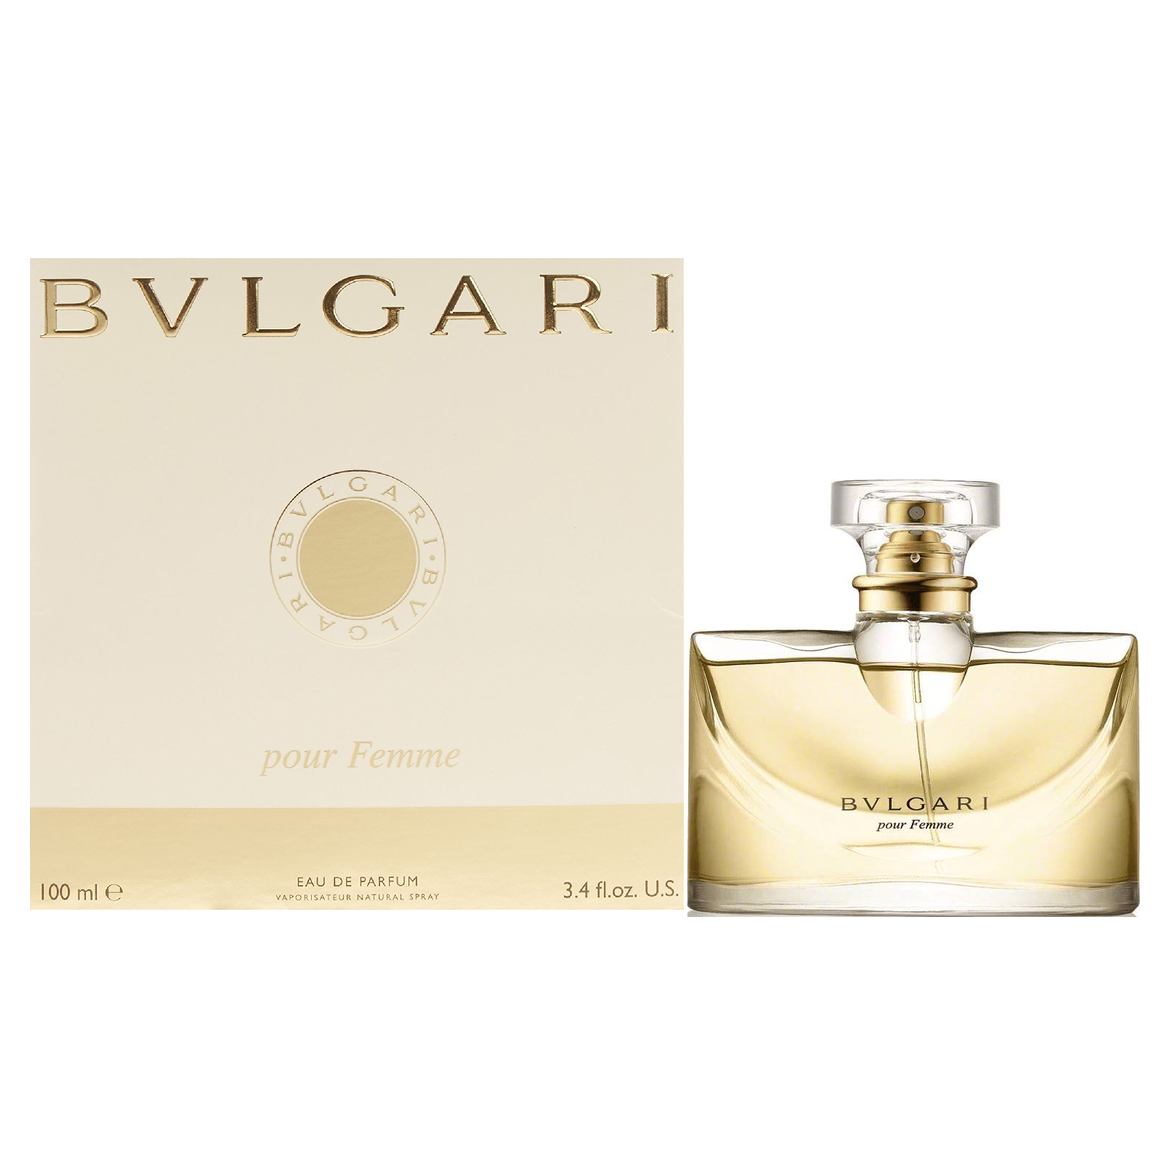 bvlgari parfum indonesia